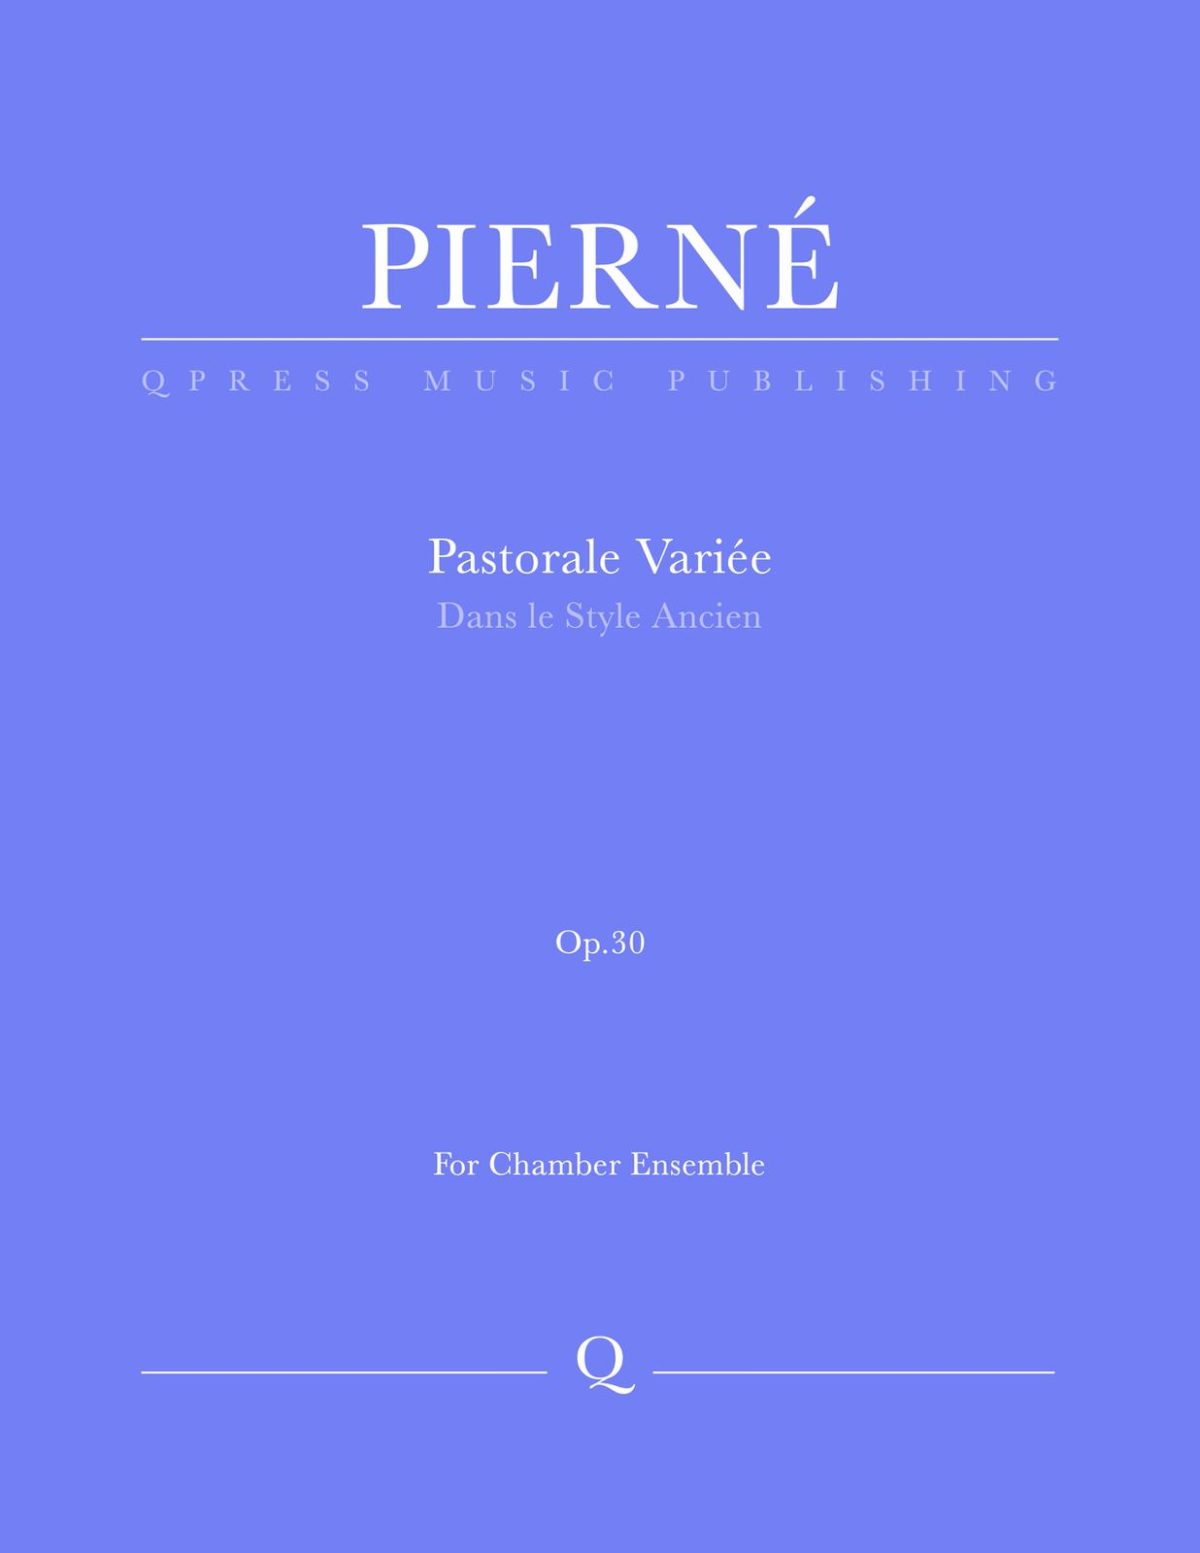 Pierné, Pastorale Variée Parts and Score-p01